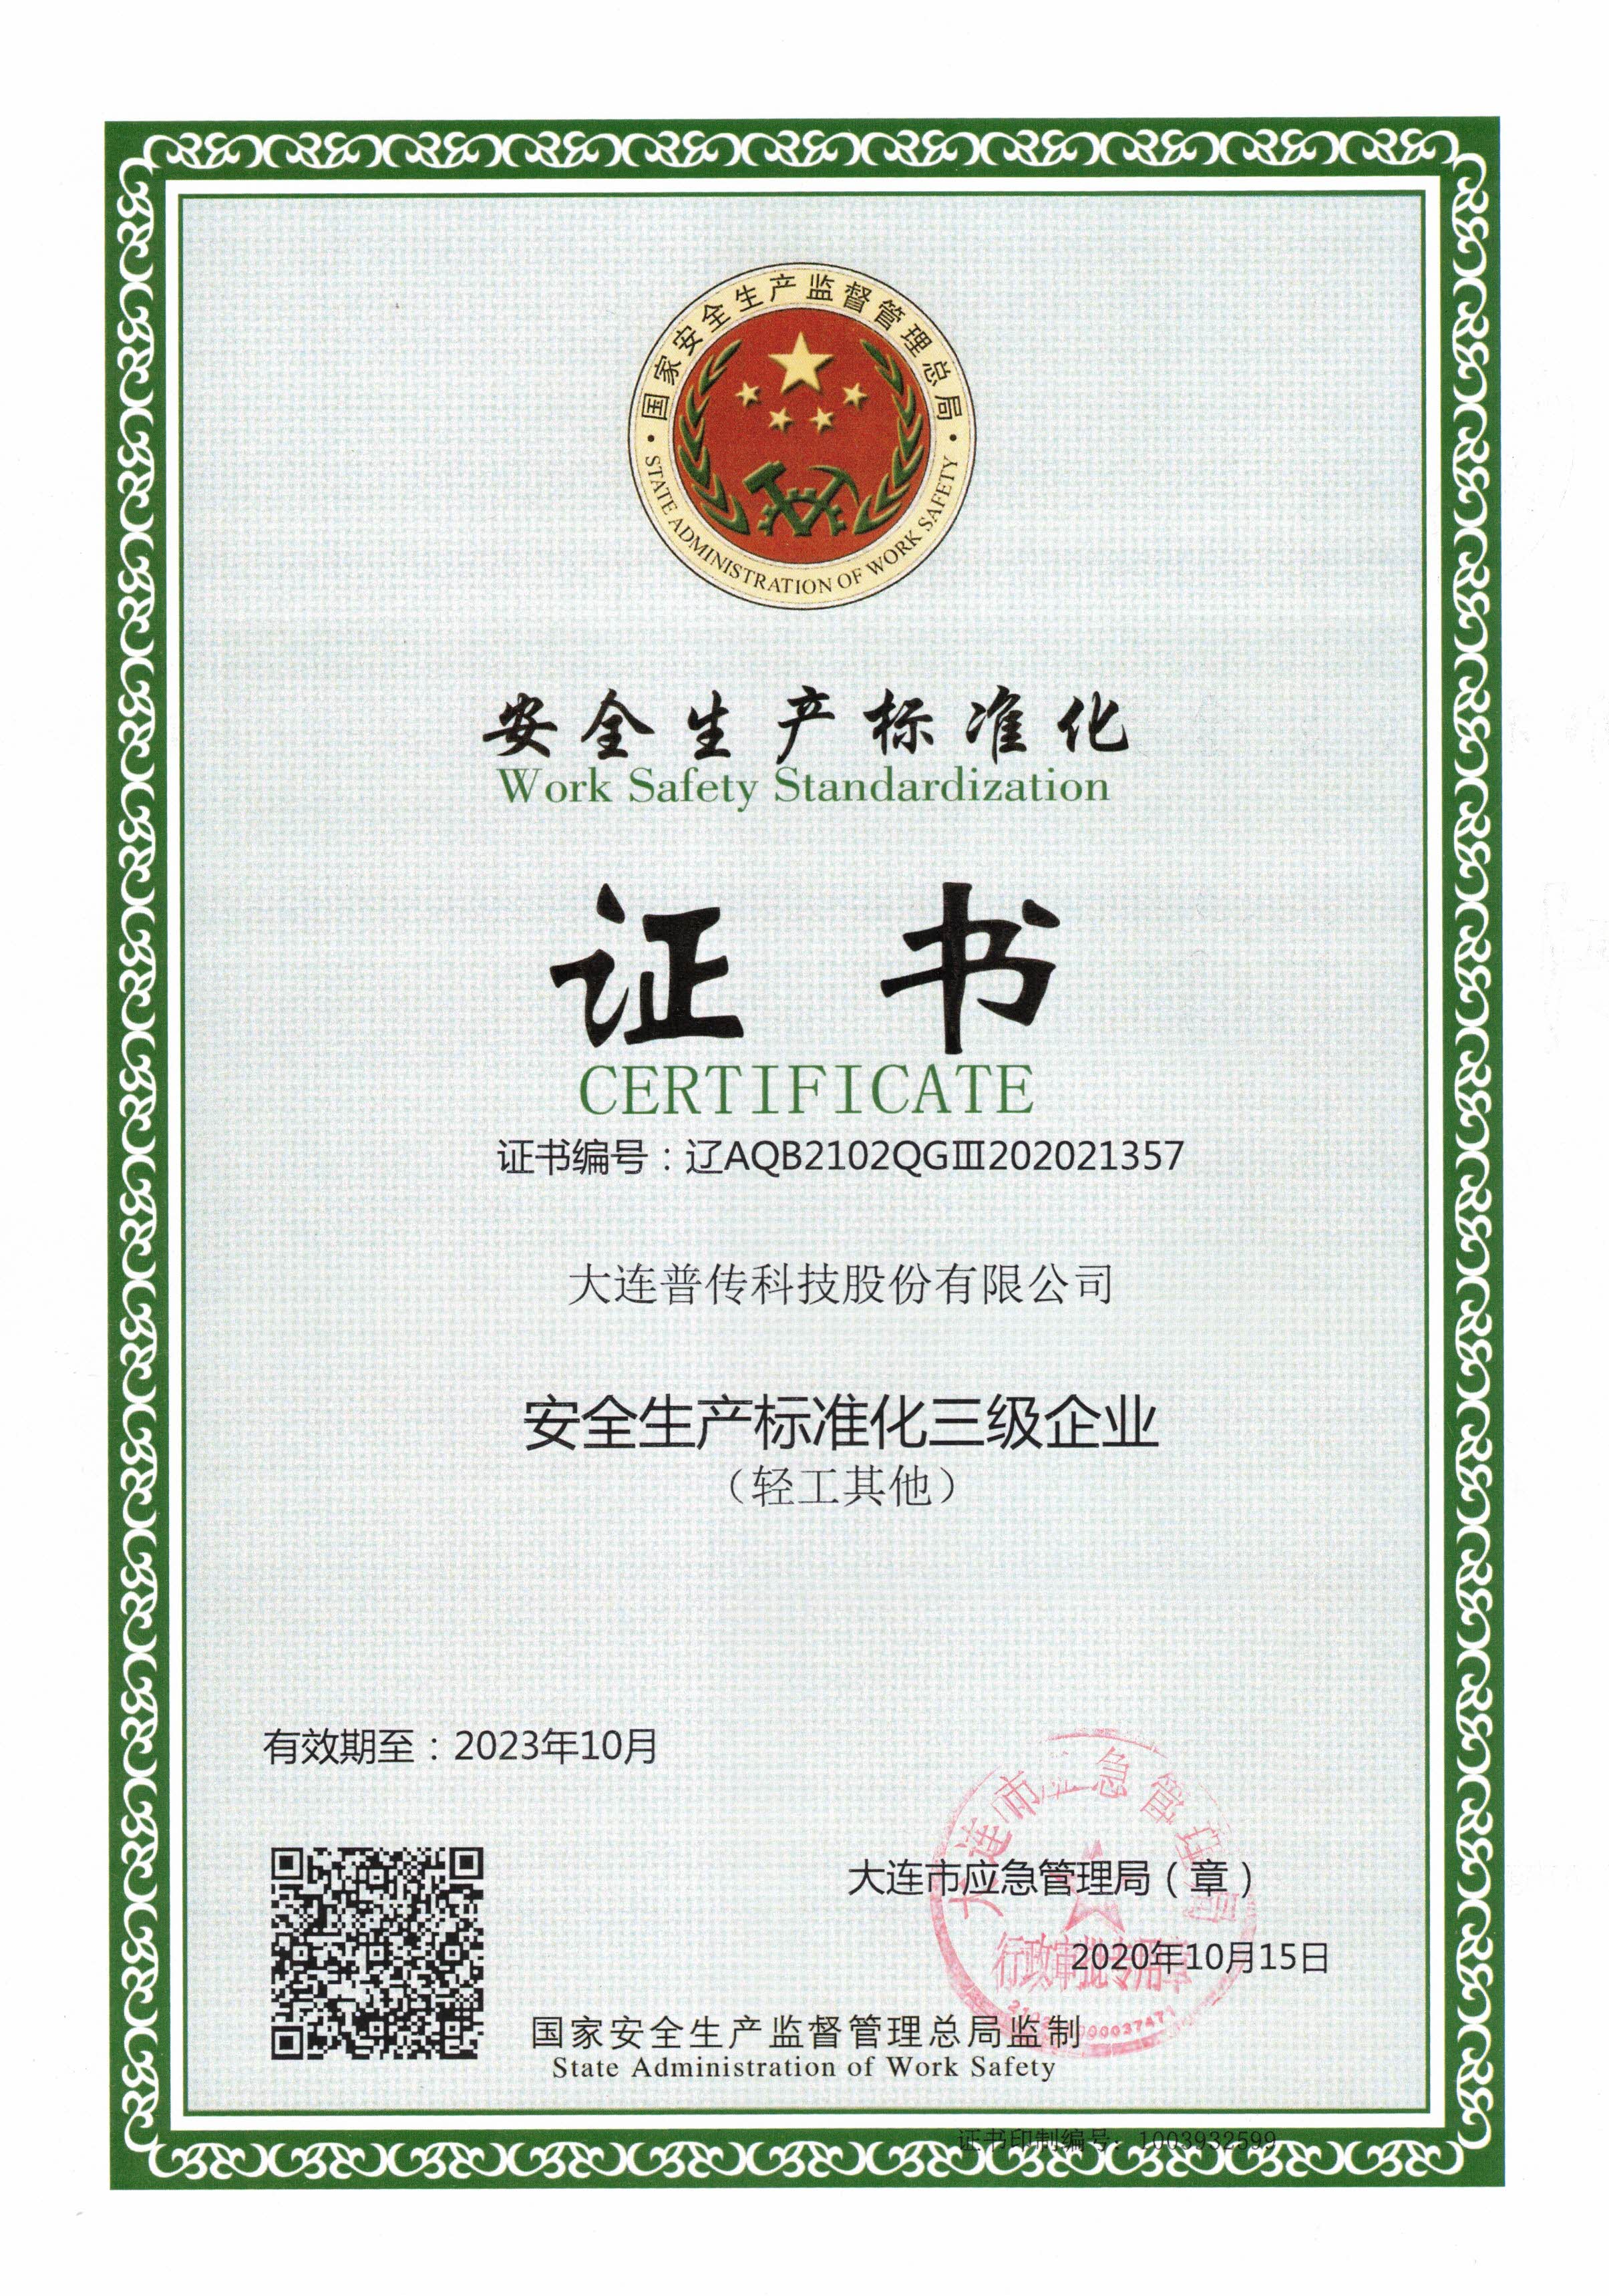 普传科技获得“安全生产标准化三级企业”证书